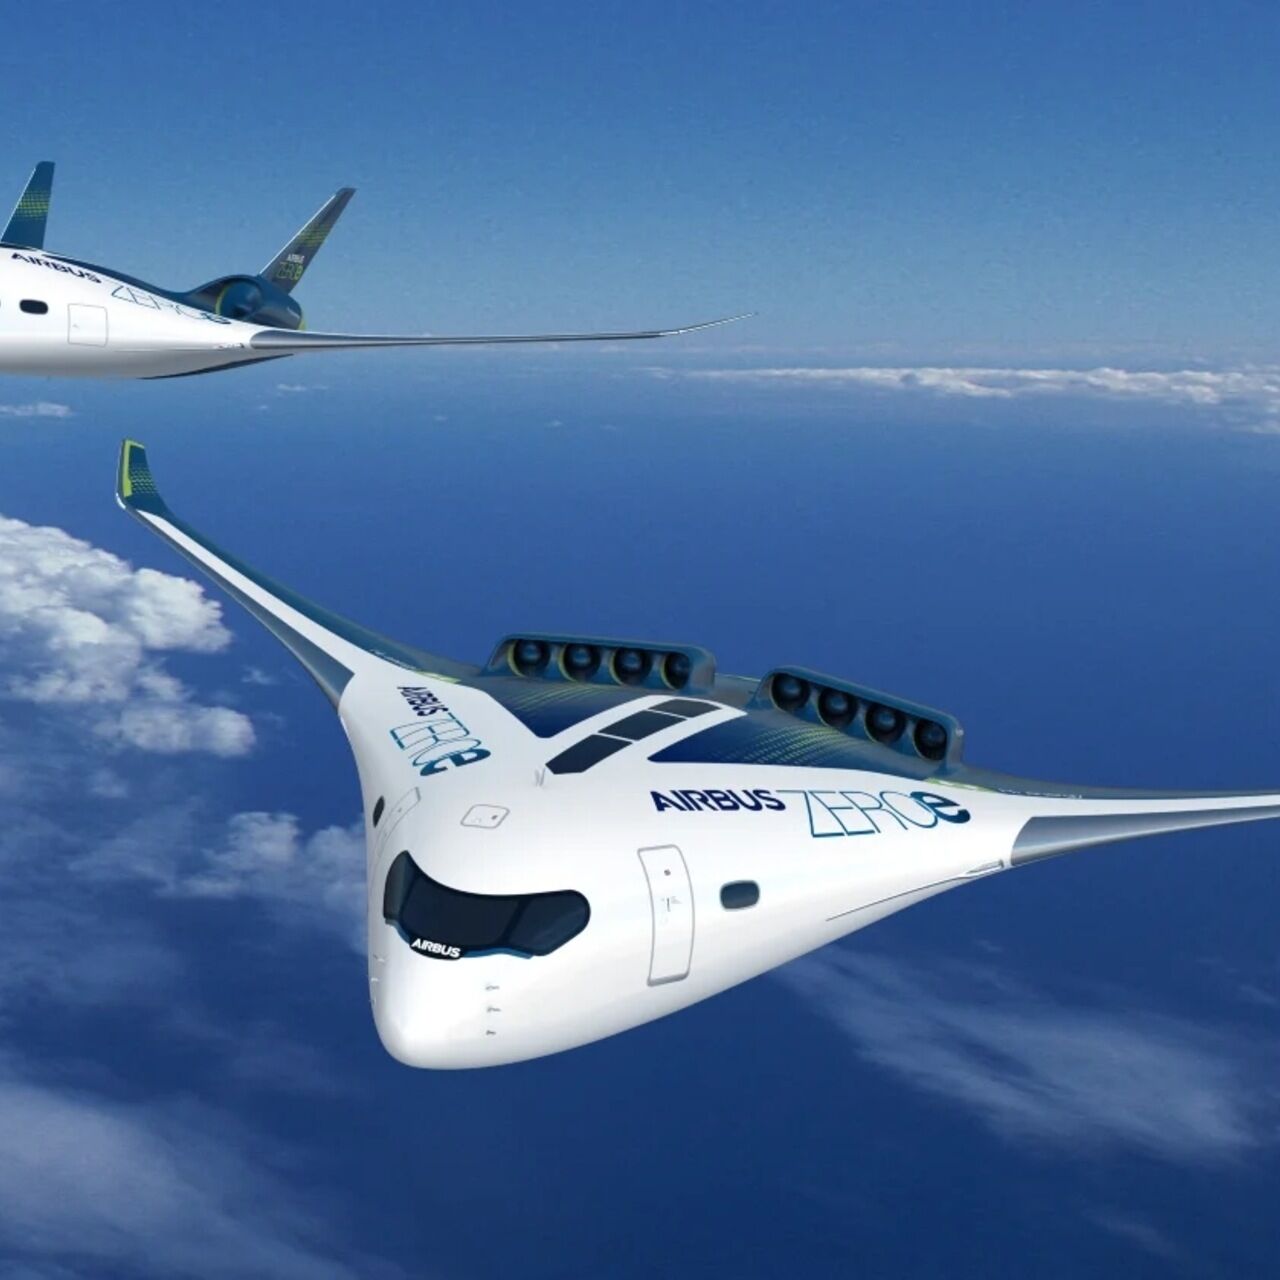 Rumore: il progetto ZEROe della compagnia Airbus è uno degli aerei ad ala mista proposti negli ultimi anni e oggetto di studio